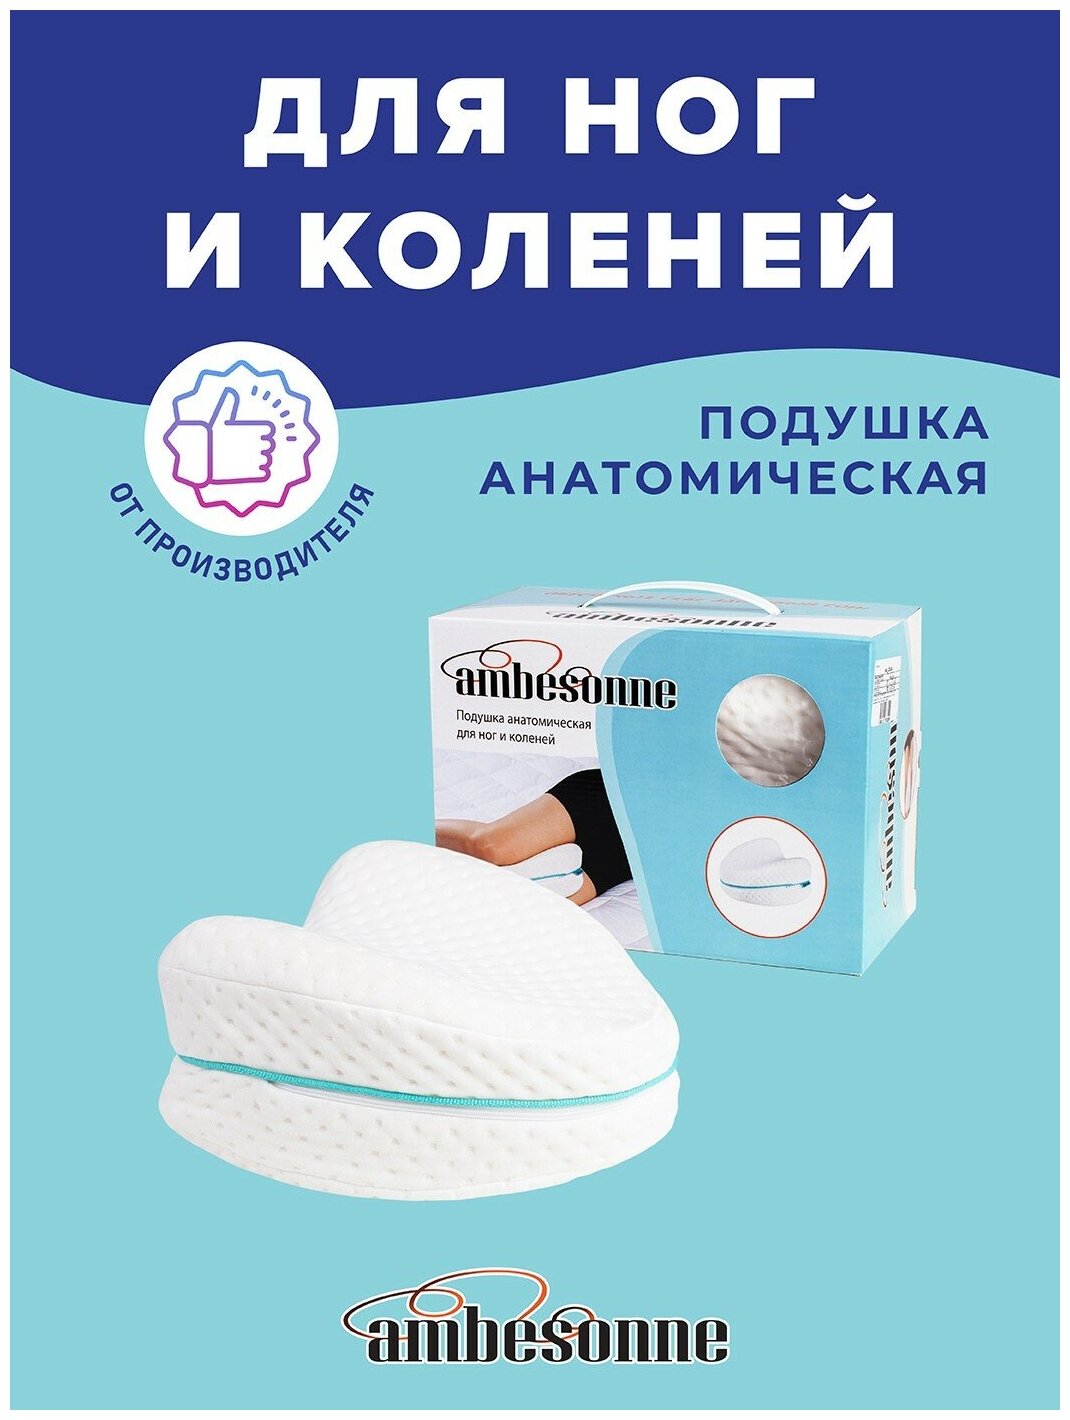 Подушка анатомическая Ambesonne для ног и коленей, размер 22x24, с эффектом памяти Memory Foam